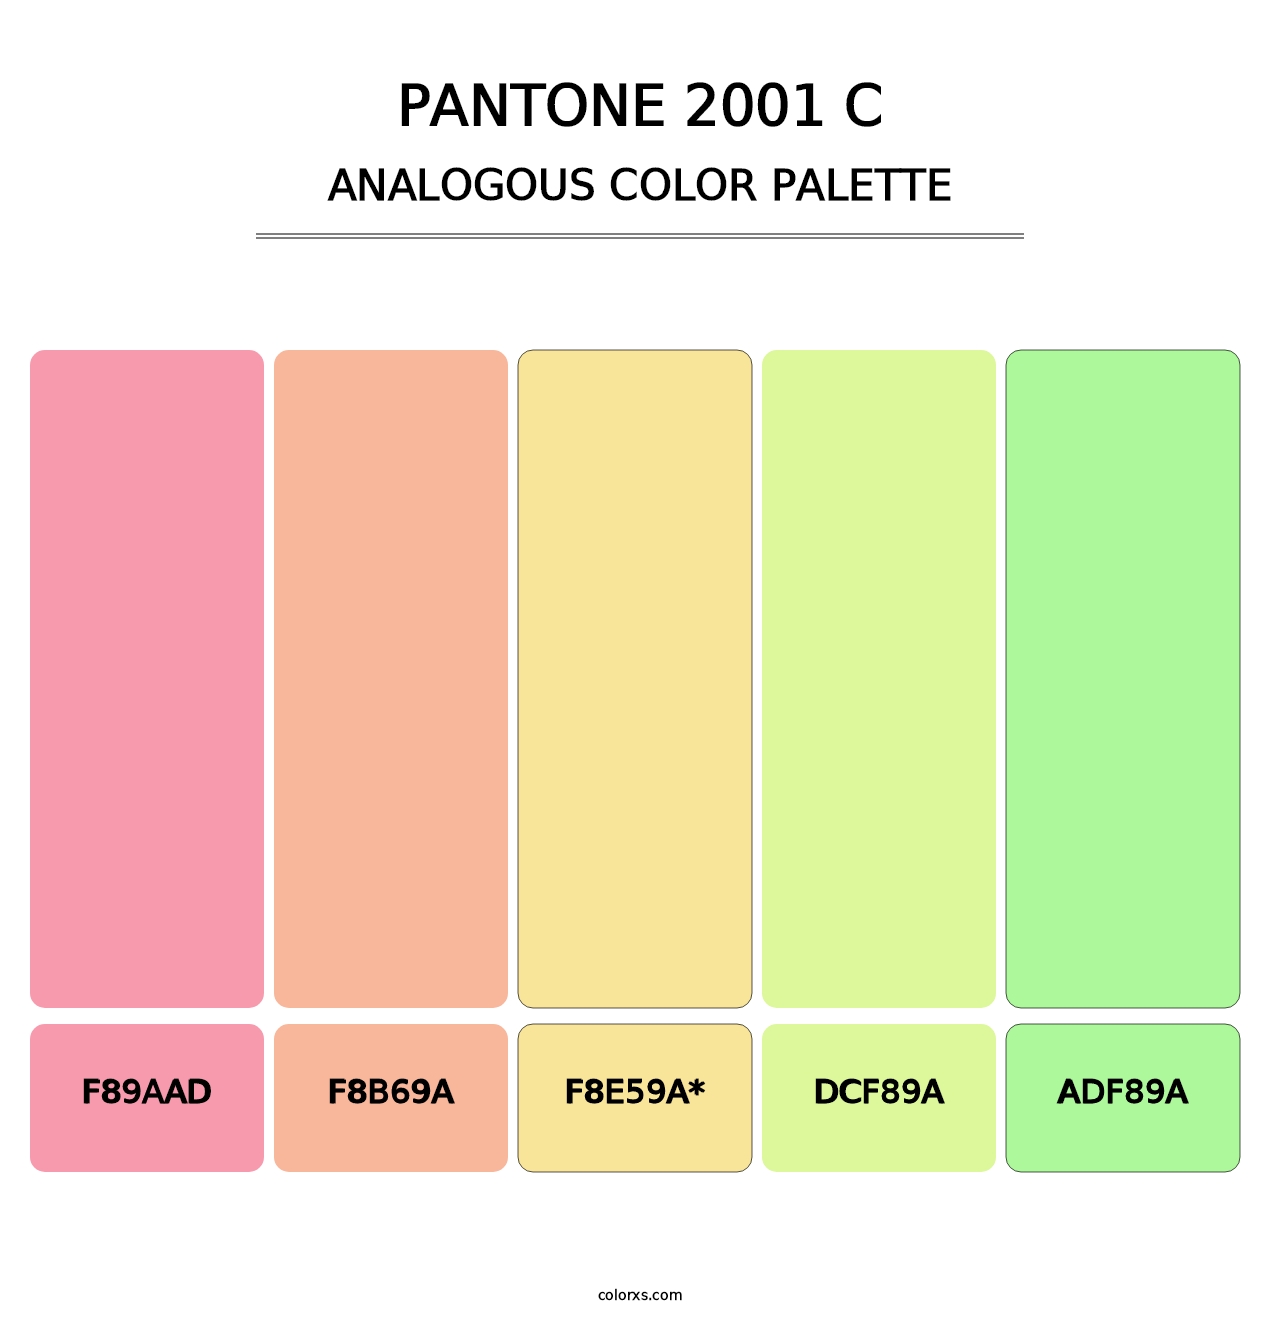 PANTONE 2001 C - Analogous Color Palette